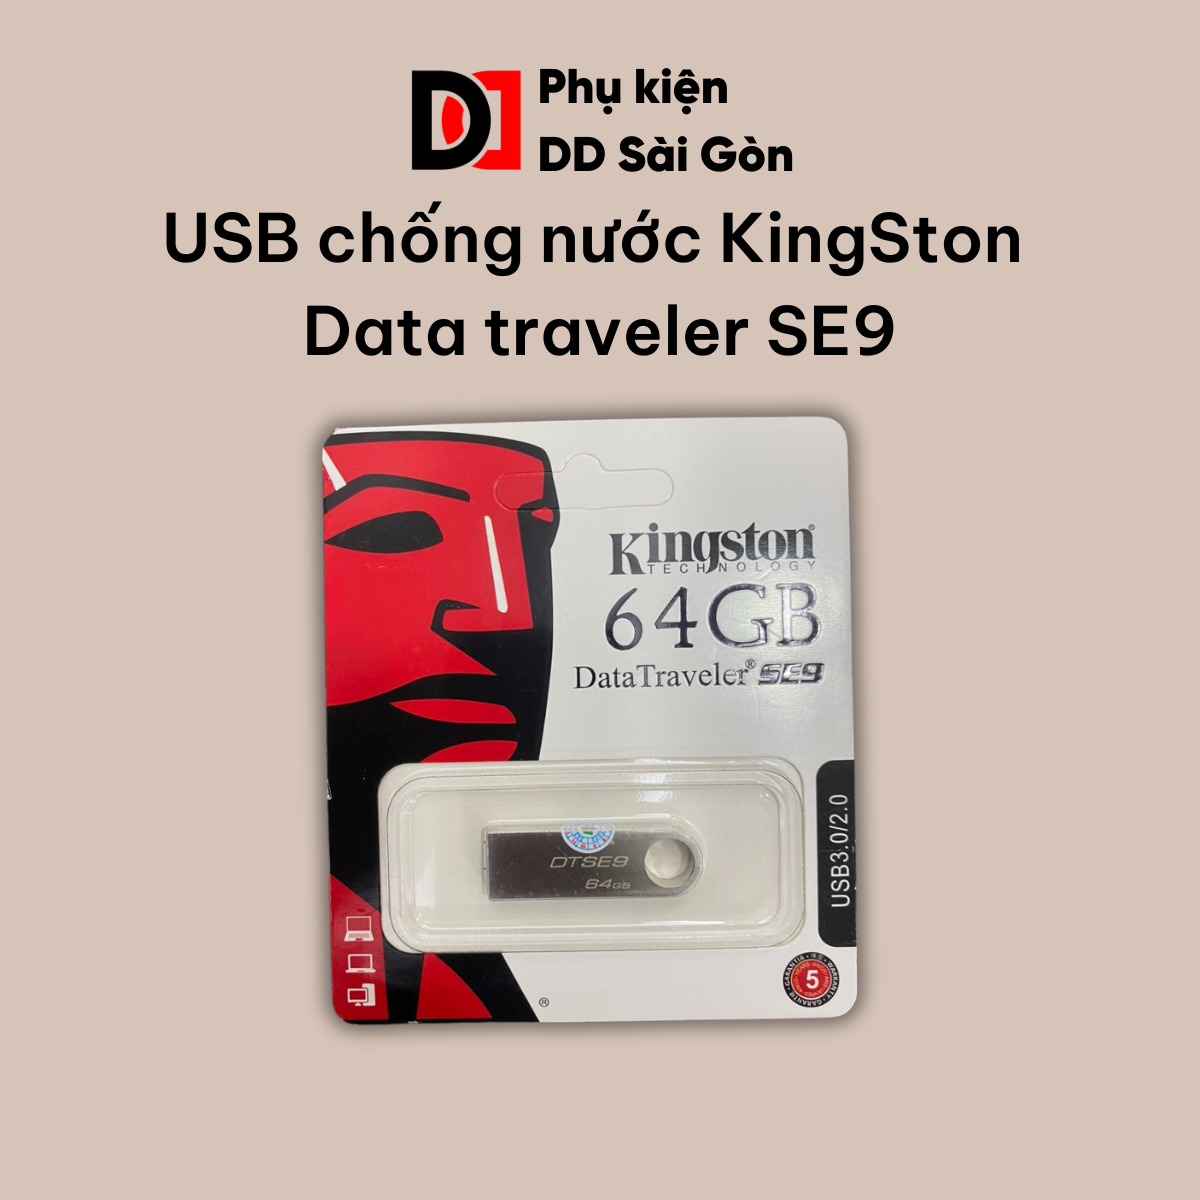 Usb chống nước Kingston DataTraveler SE9 64GB 32GB 16GB 8GB 4GB 2GB nhỏ gọn | Phụ Kiện DD Sài Gòn